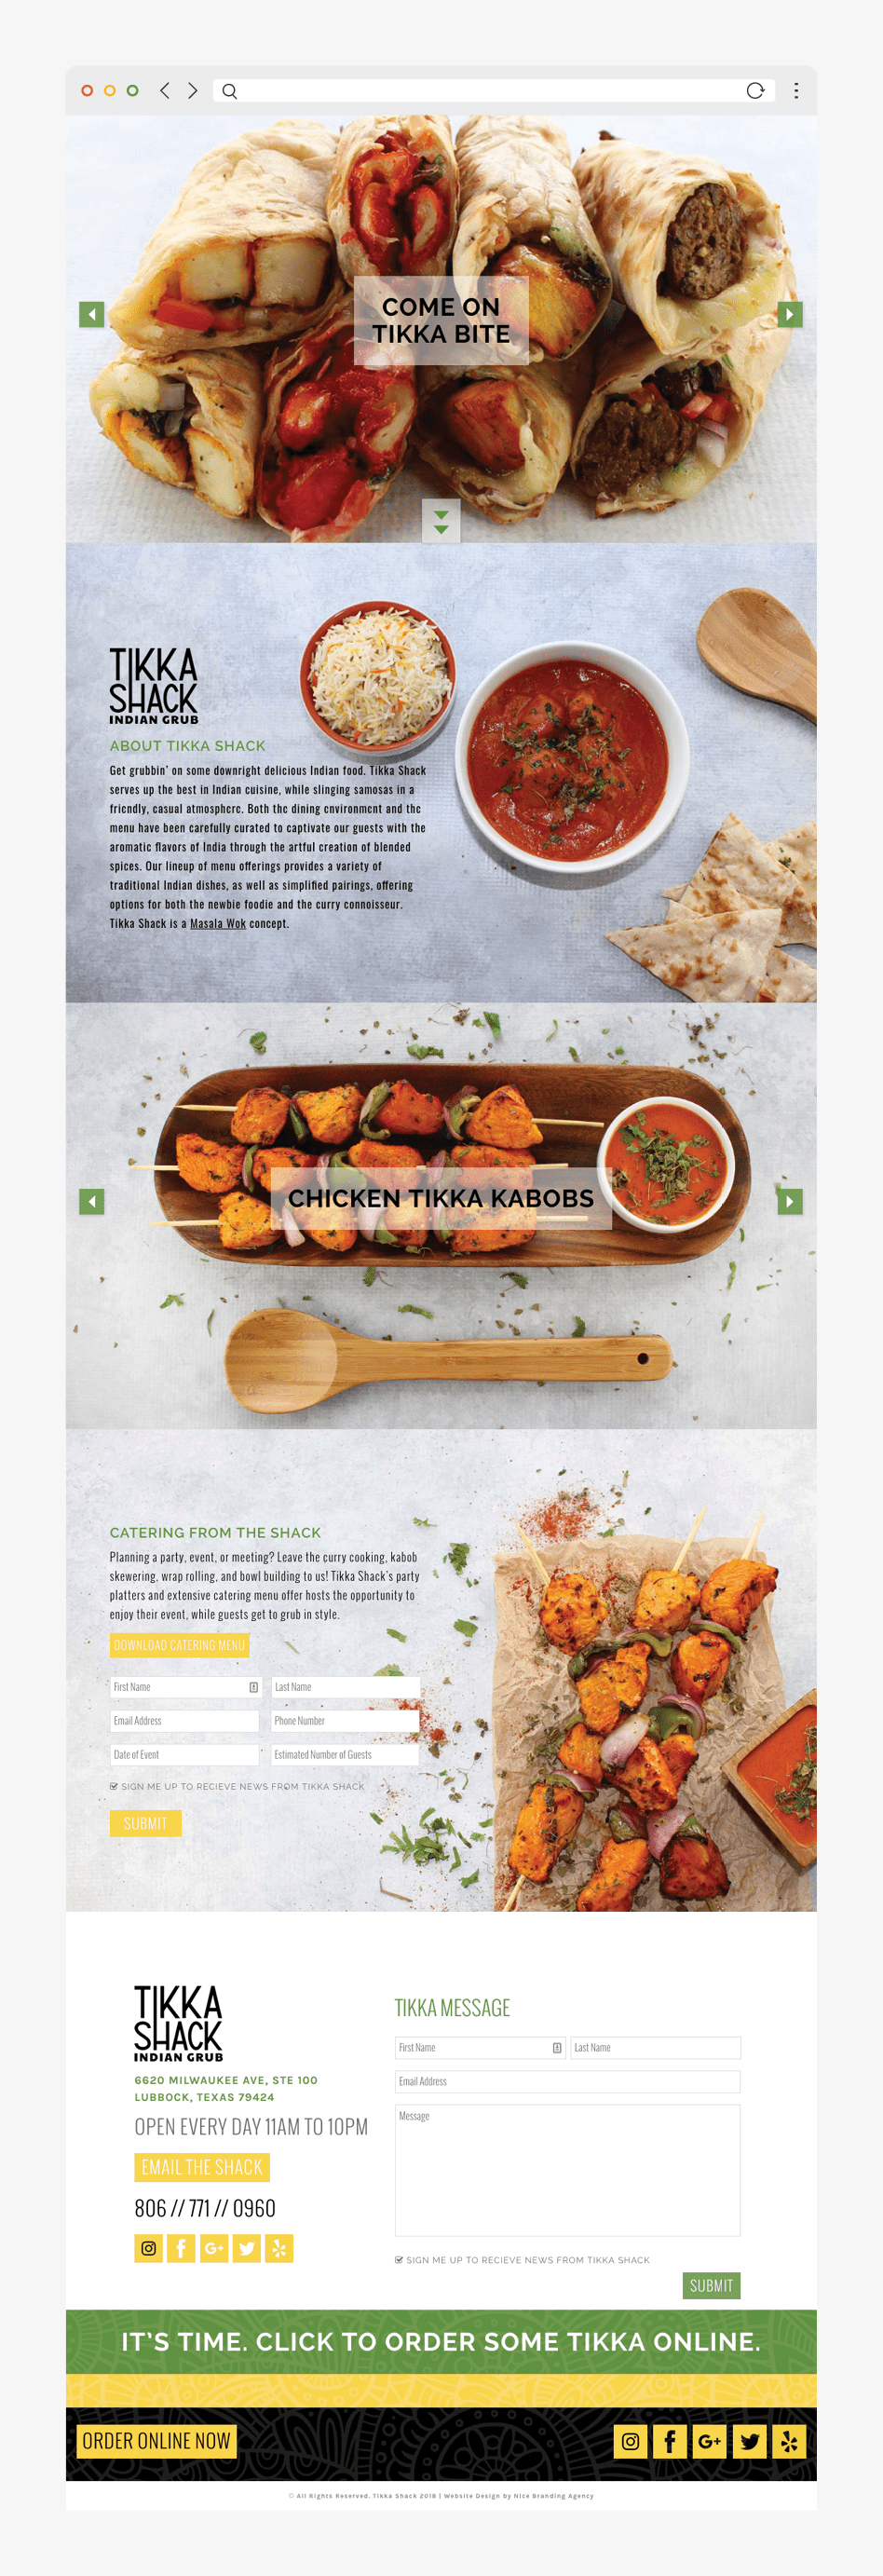 Indian Restaurant Website Design by a Nashville Web Design Company